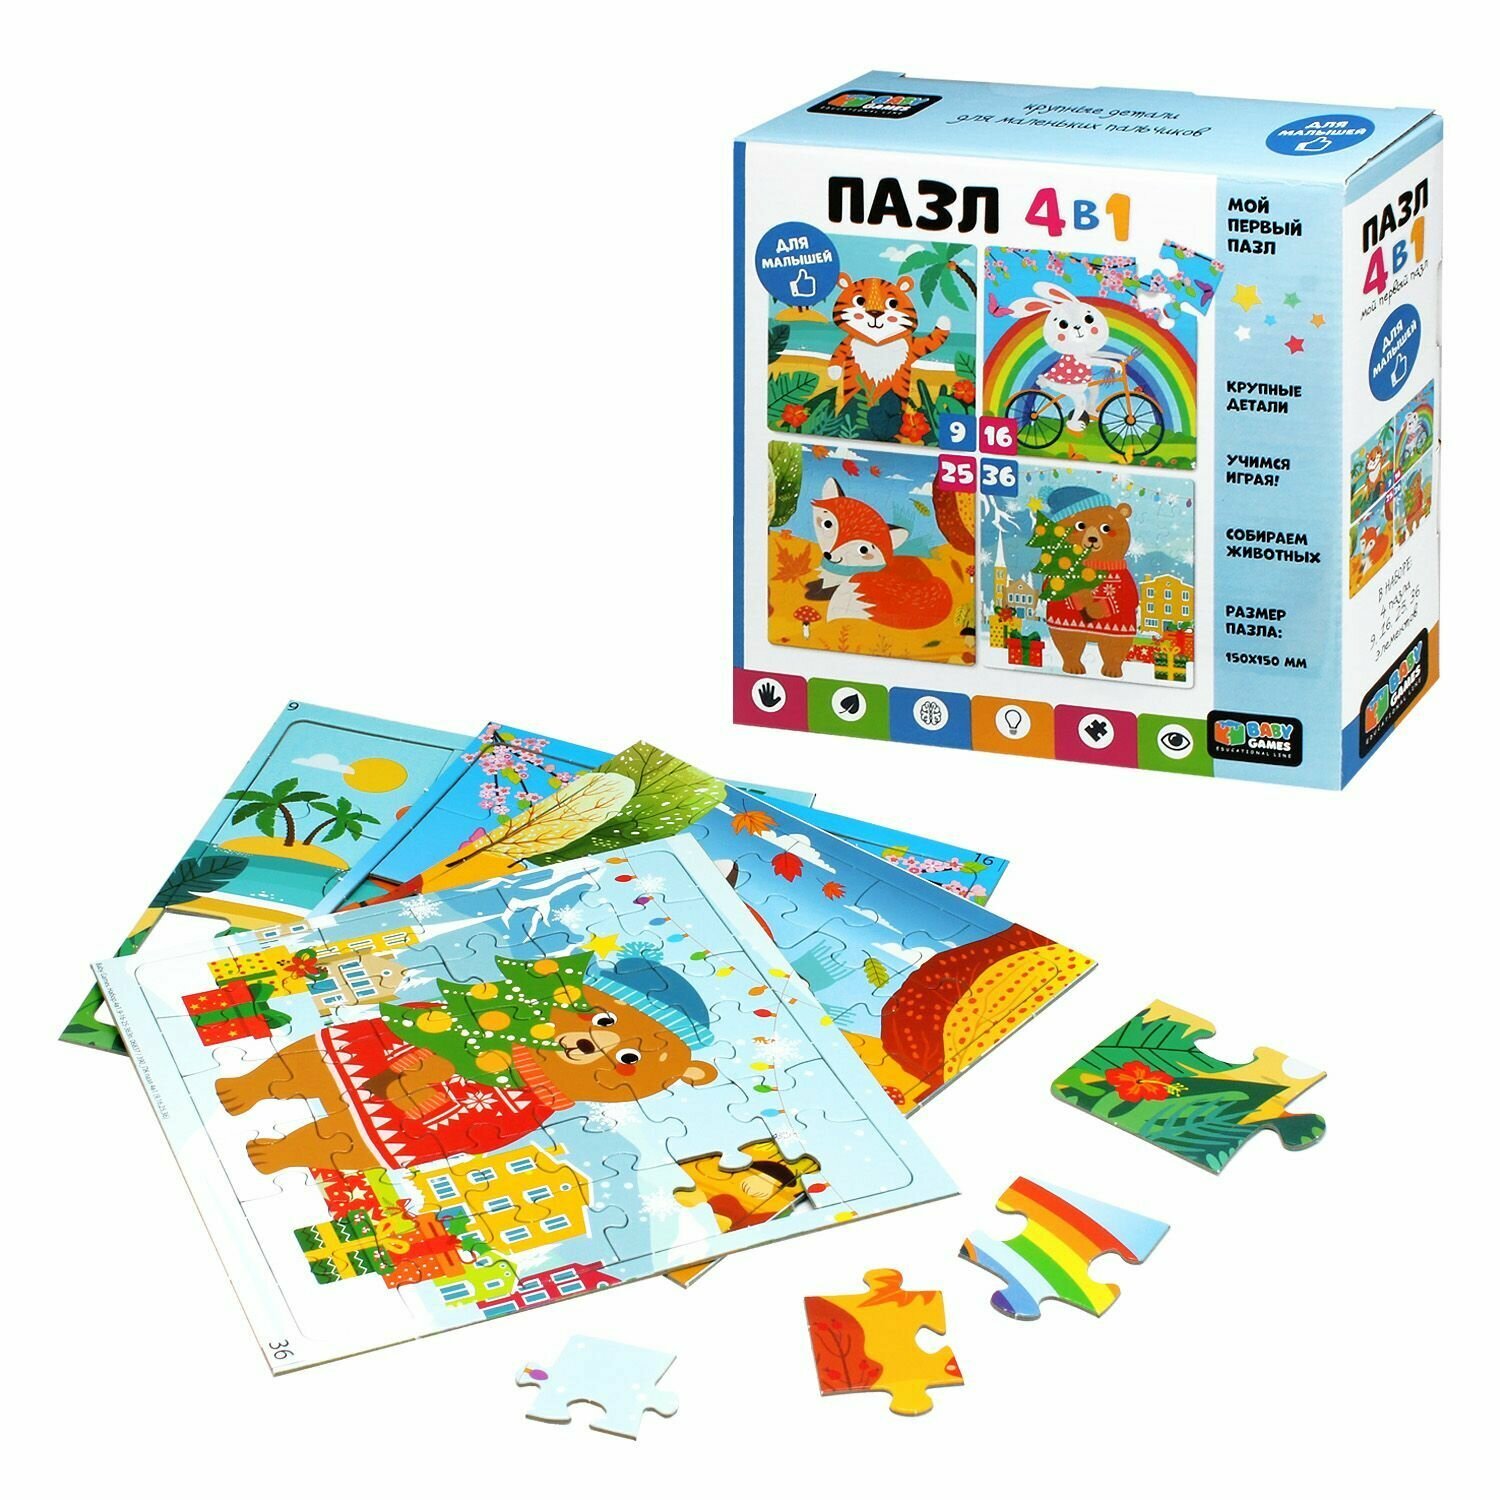 Пазл Baby Games набор 9 дет,16 дет,25 дет,36 дет. Круглый год (4в1) 06837, (ООО "Оригами")